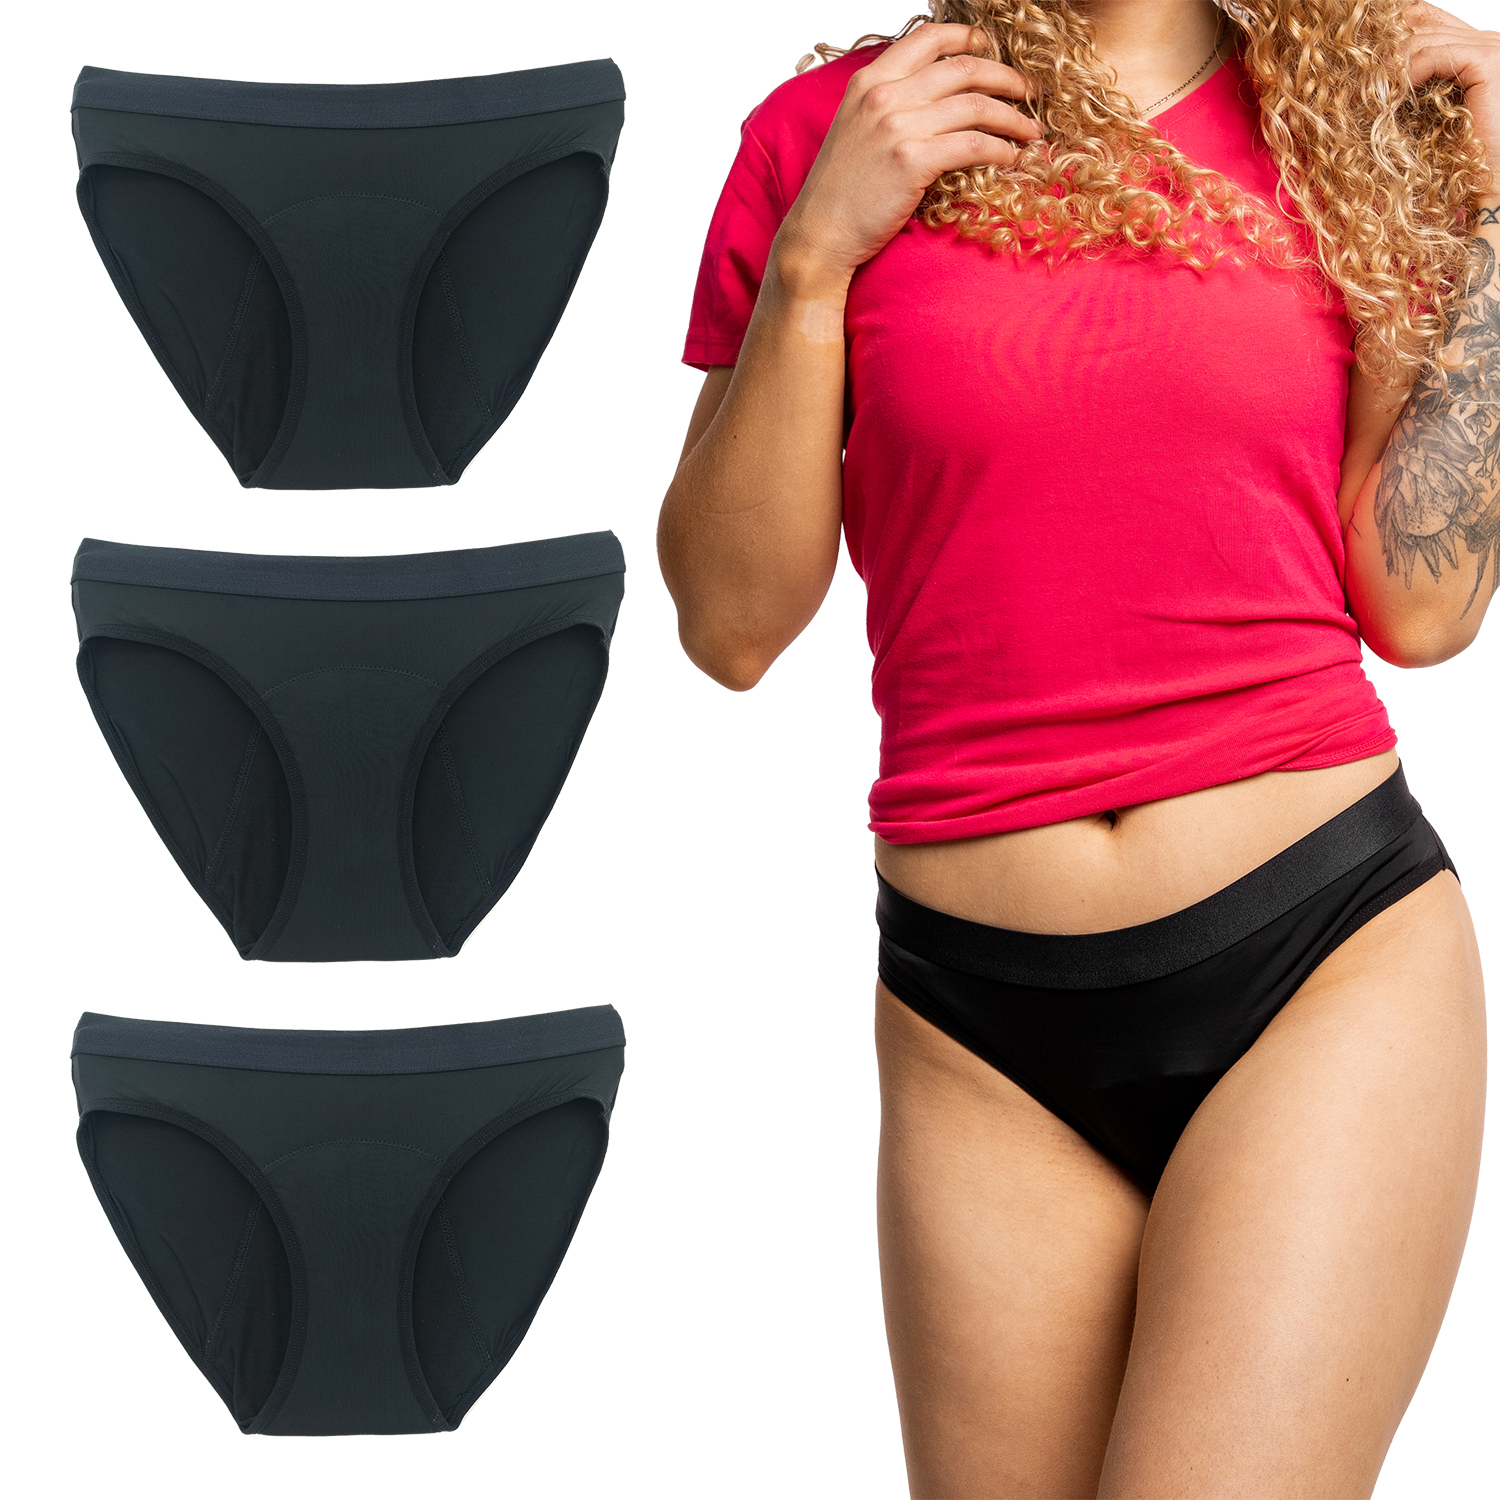 Bikini Spandex / Lycra - 3 Pack - Confidence Period Panties